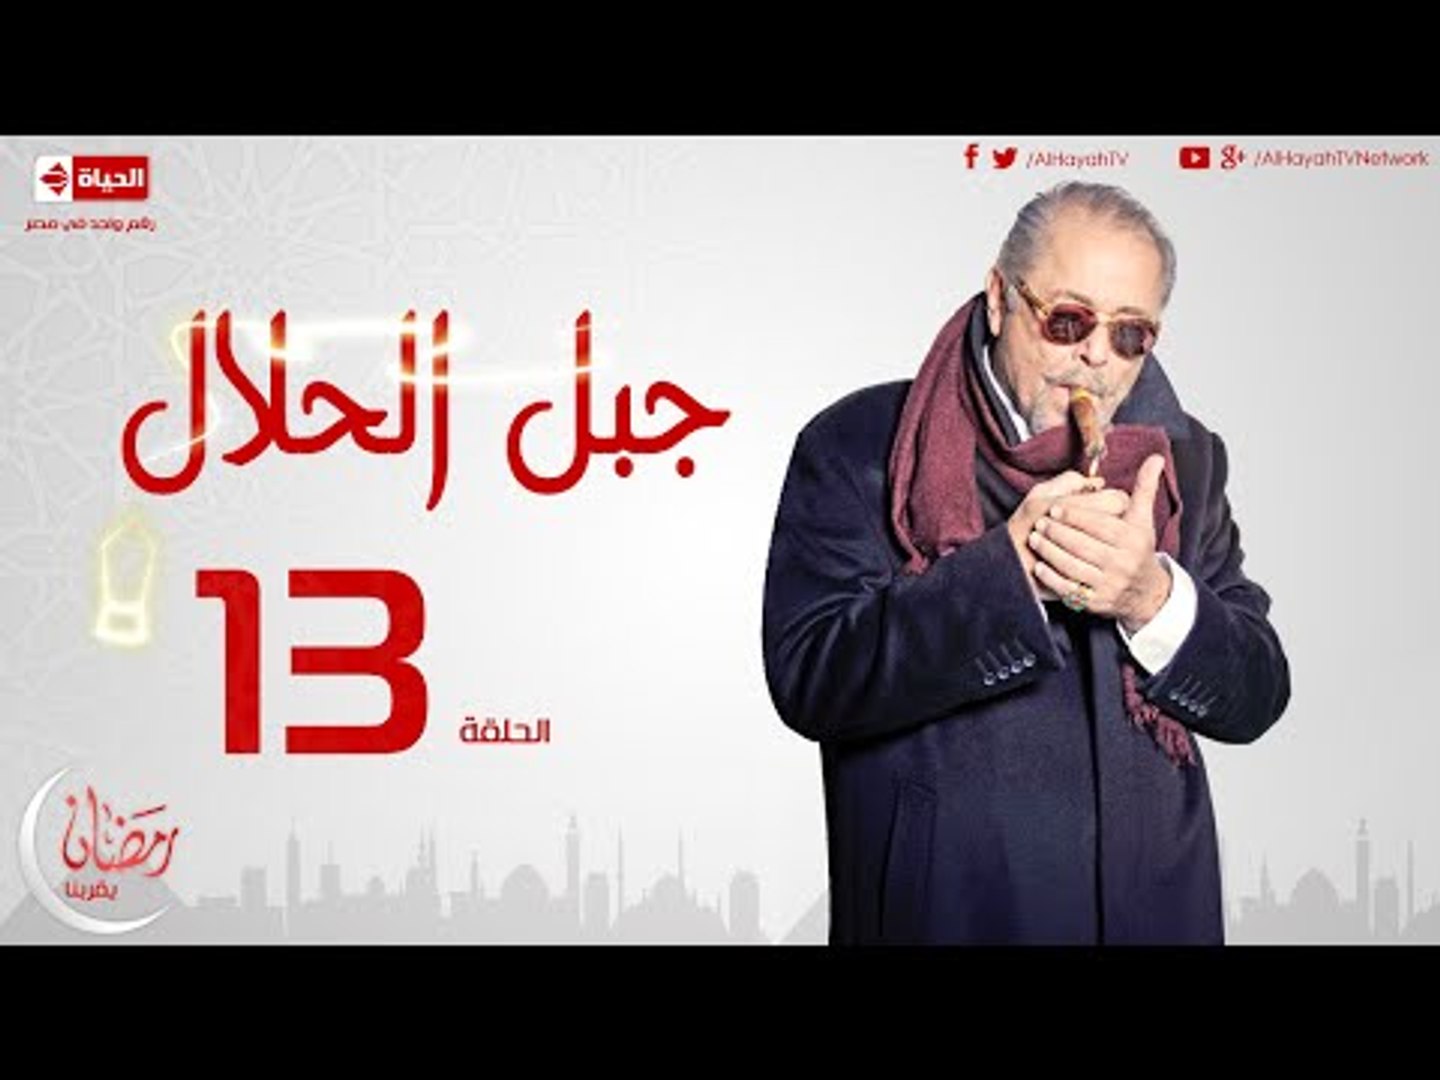 مسلسل جبل الحلال للنجم محمود عبدالعزيز - الحلقة الثالثة عشر - Gabal ElHalal  - Episode 13 - video Dailymotion